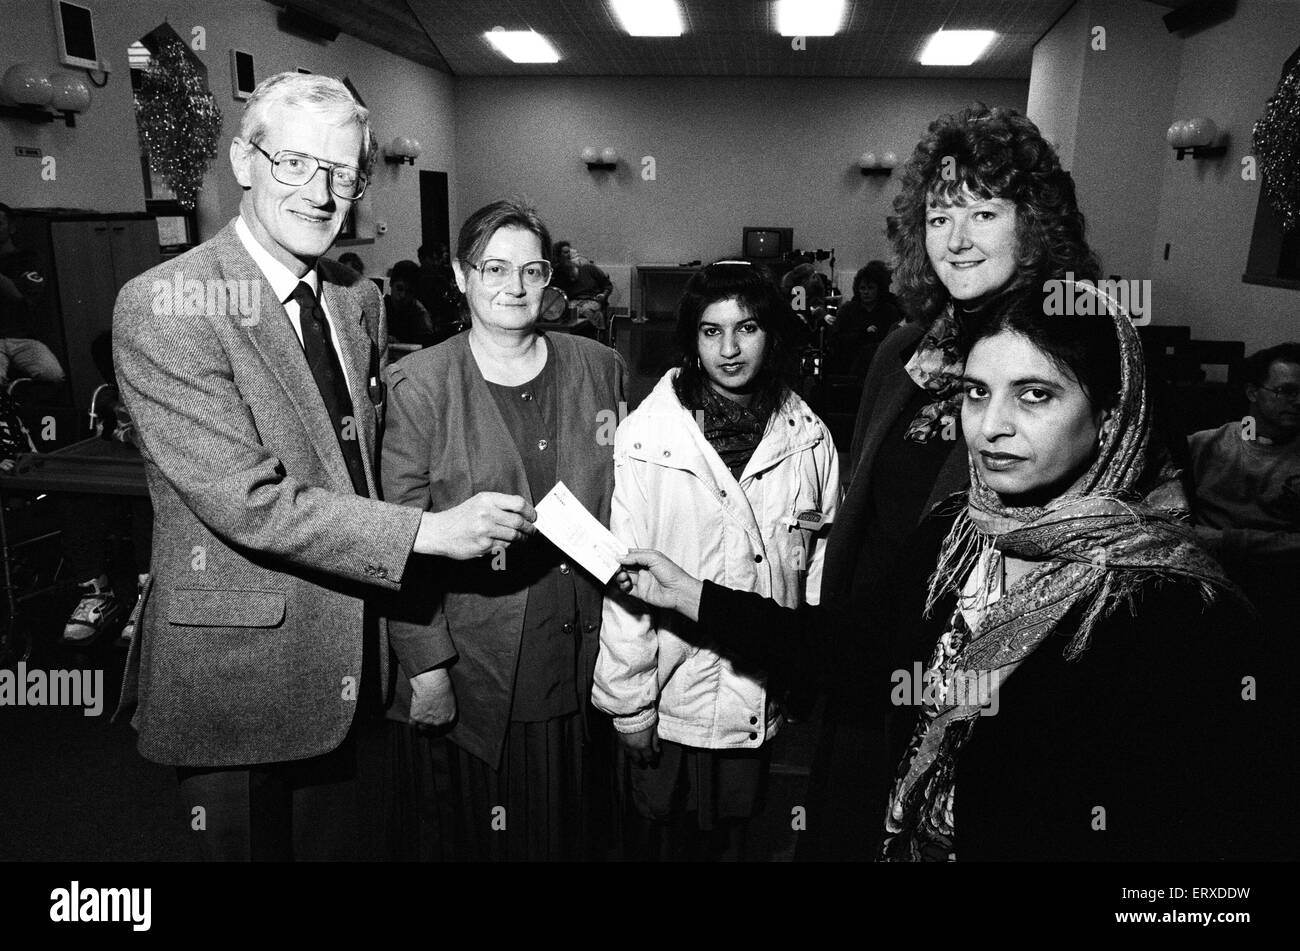 Marsh Centre d'éducation des adultes et de formation pour la vie , Lockwood présente un chèque de 250 € à l'école, Mirfield Holly Bank. 13 décembre 1991. Banque D'Images